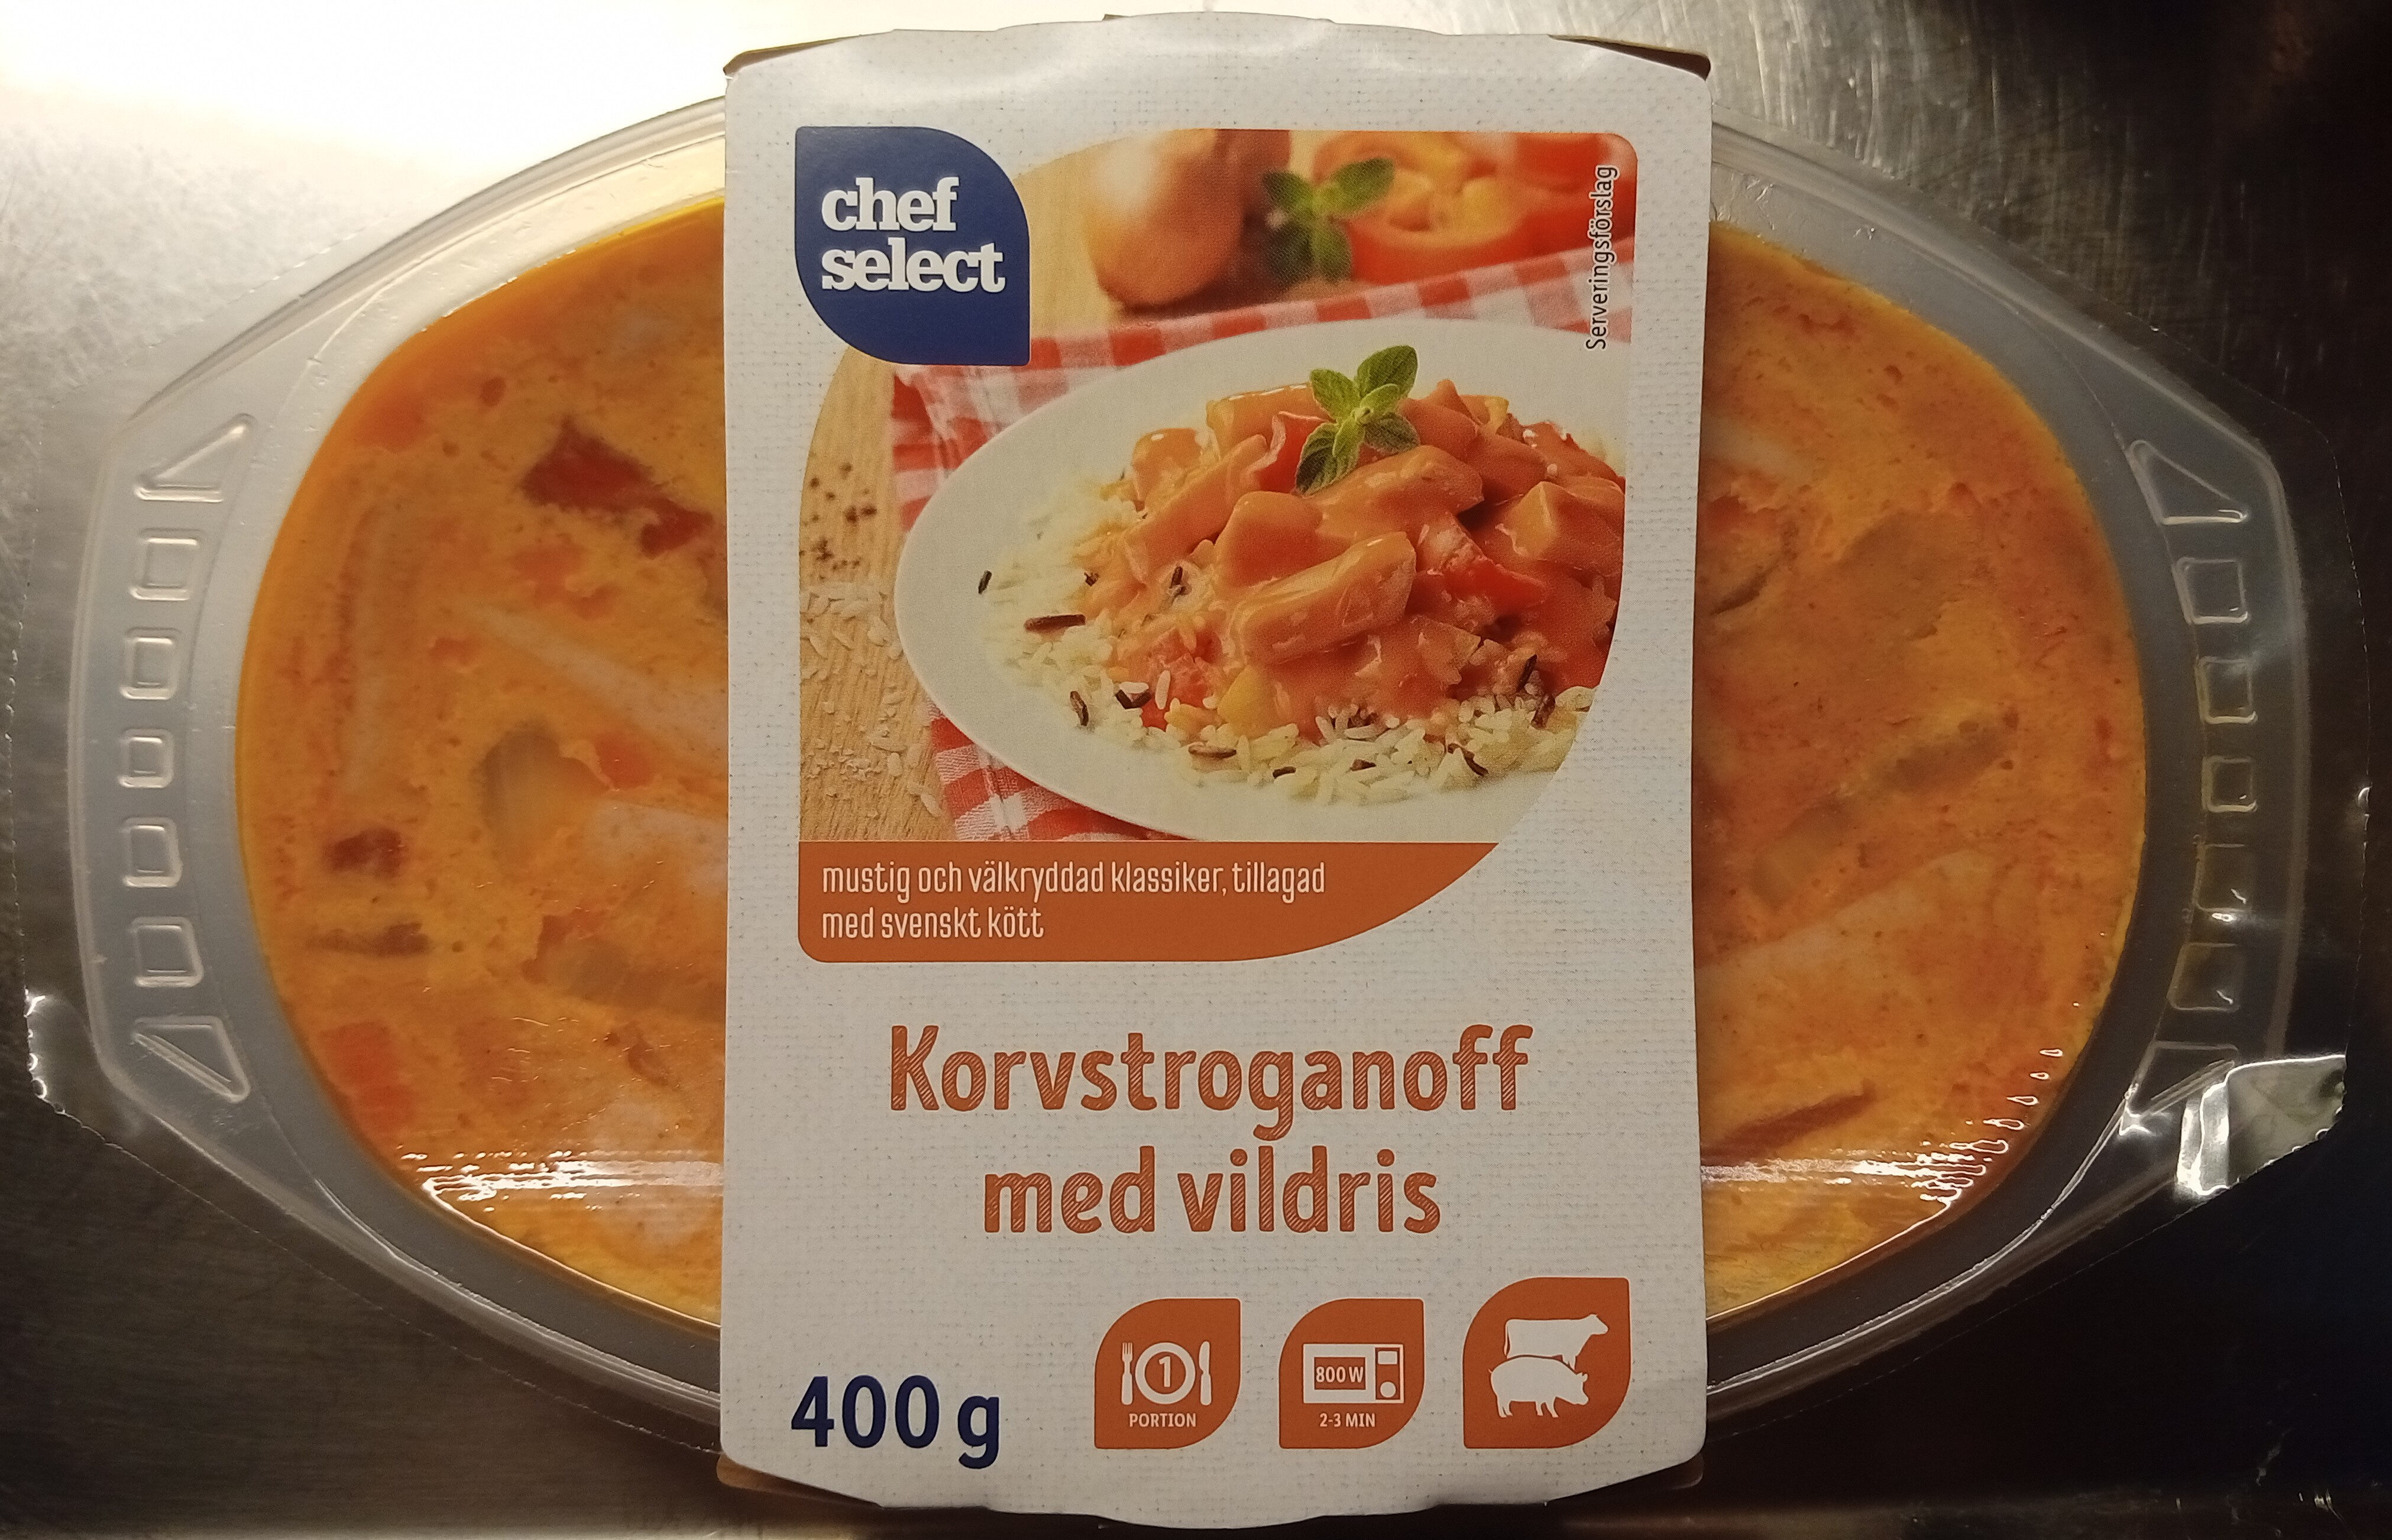 Chef Select Korvstroganoff med vildris - Produkt - sv